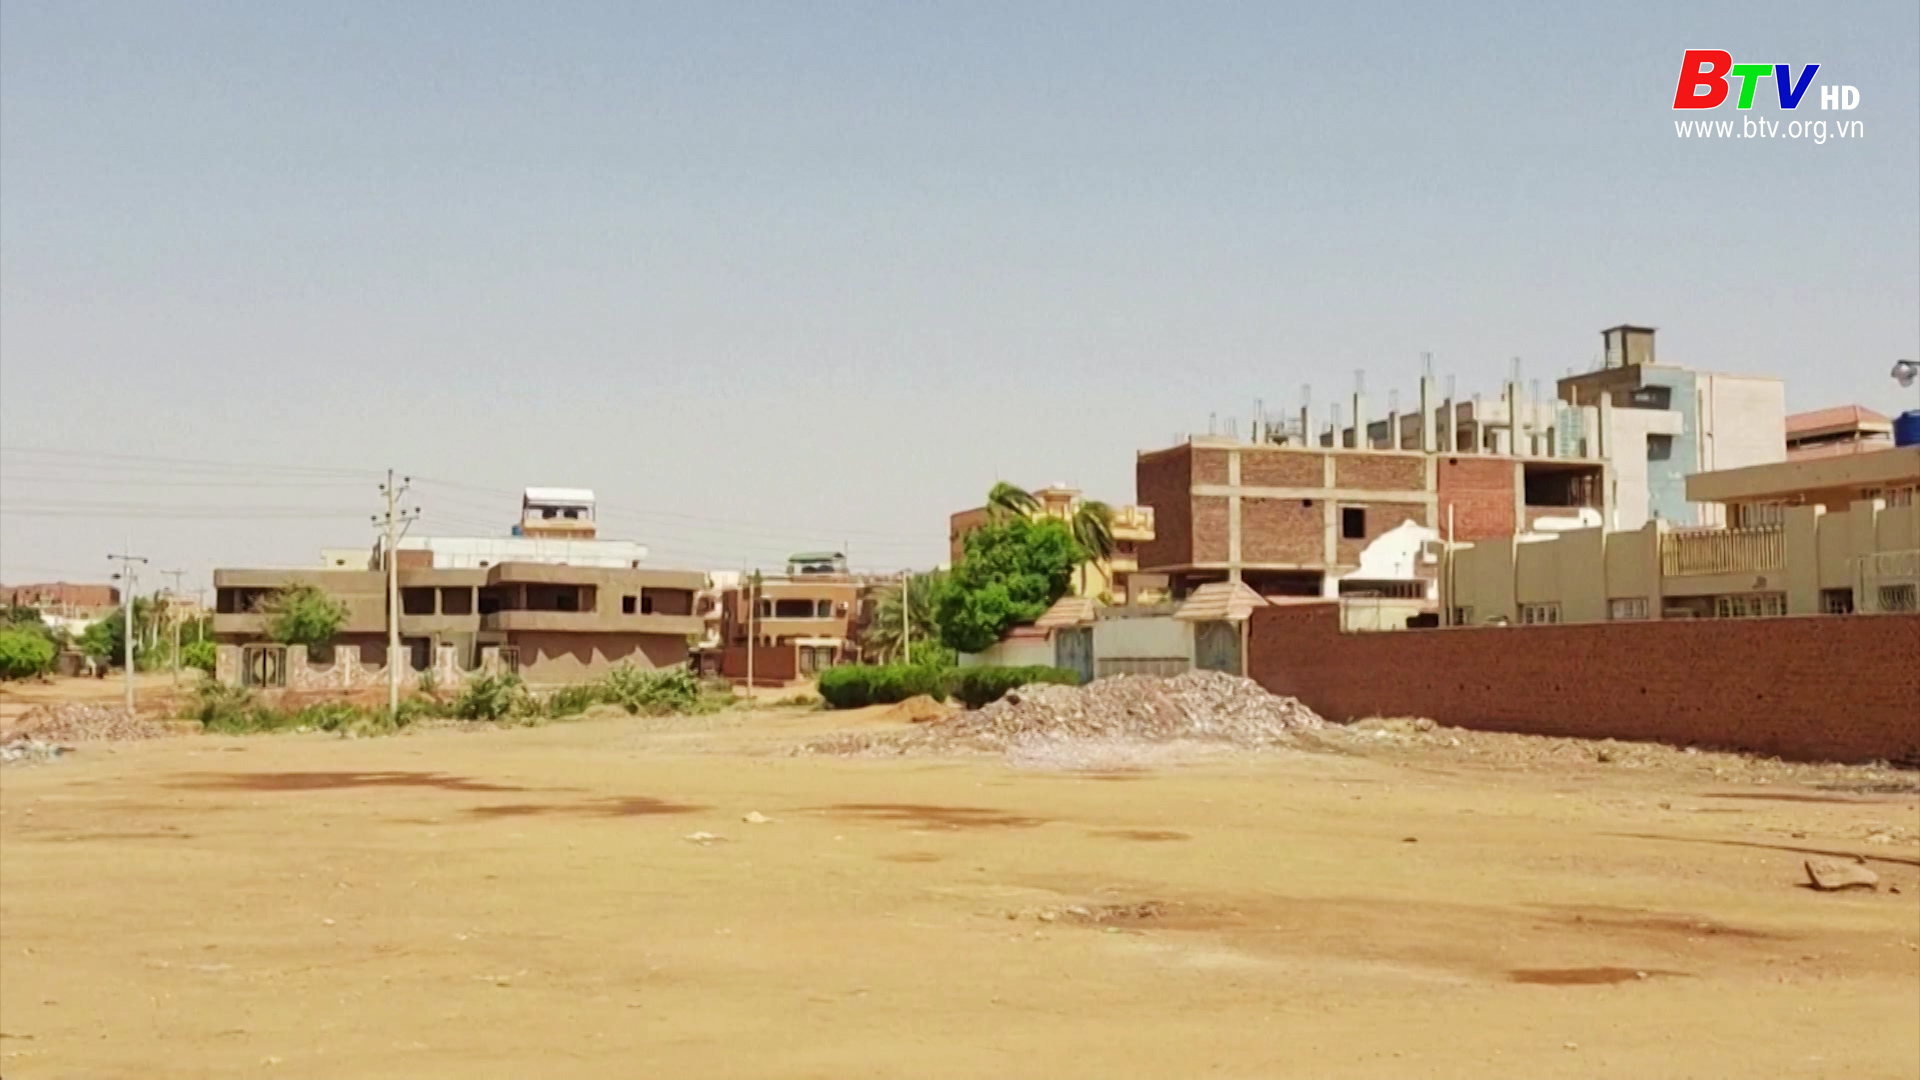 Hơn 1,2 triệu người rời bỏ nhà cửa vì xung đột tại Sudan